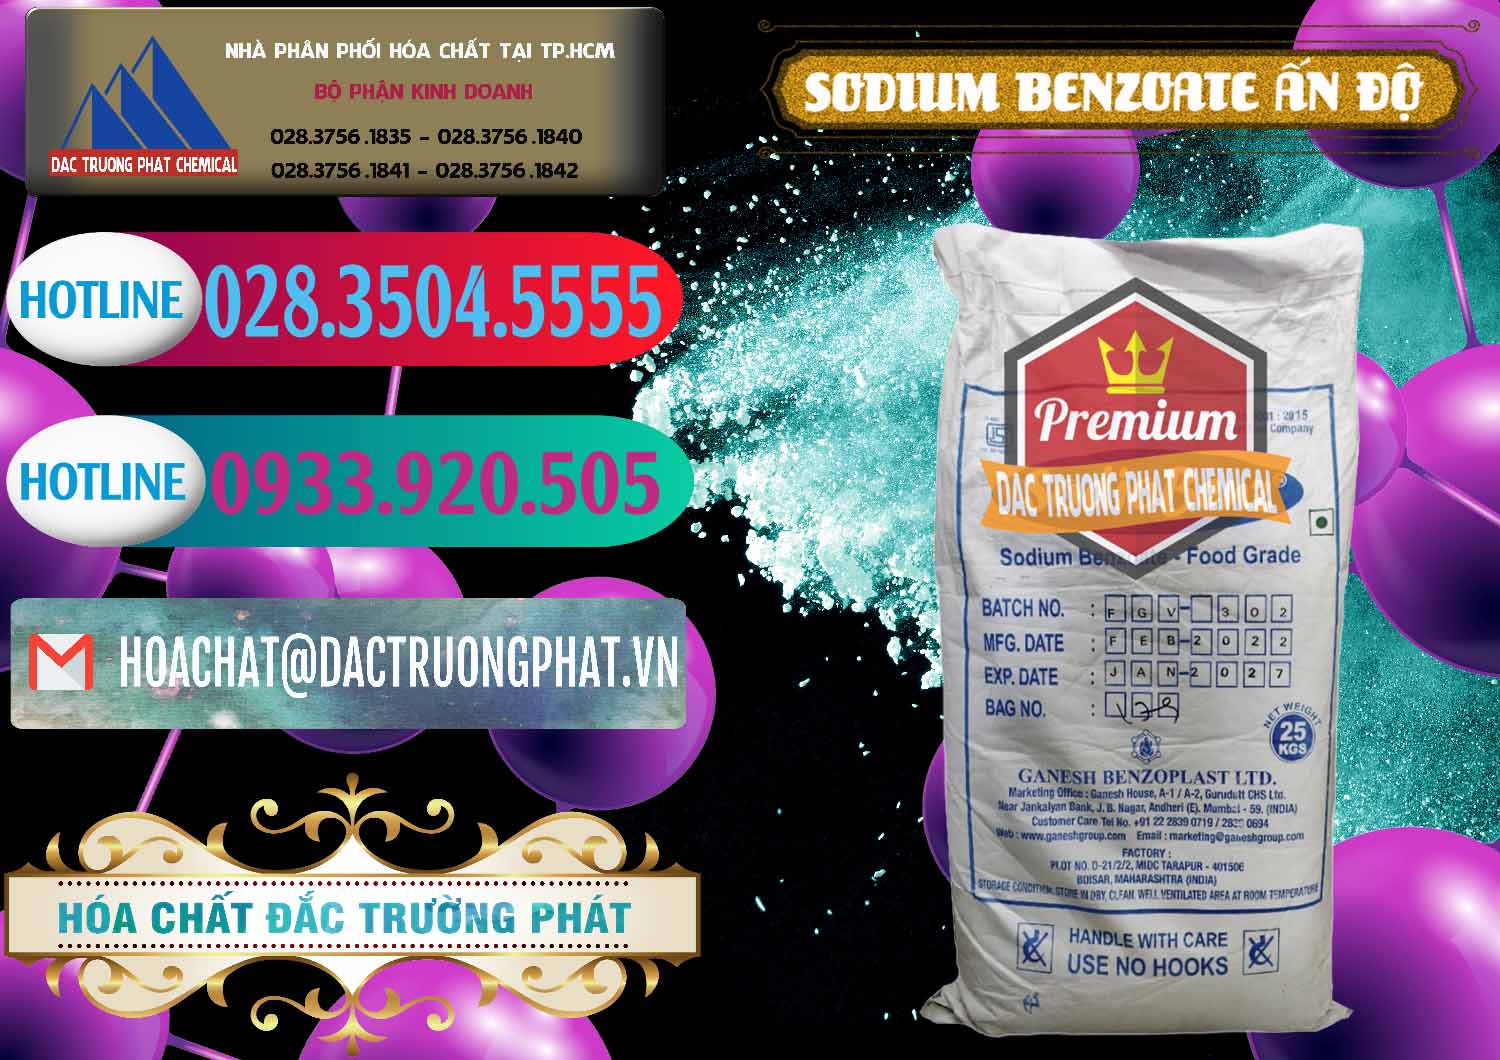 Đơn vị chuyên bán - phân phối Sodium Benzoate - Mốc Bột Ấn Độ India - 0361 - Cty chuyên nhập khẩu _ cung cấp hóa chất tại TP.HCM - truongphat.vn